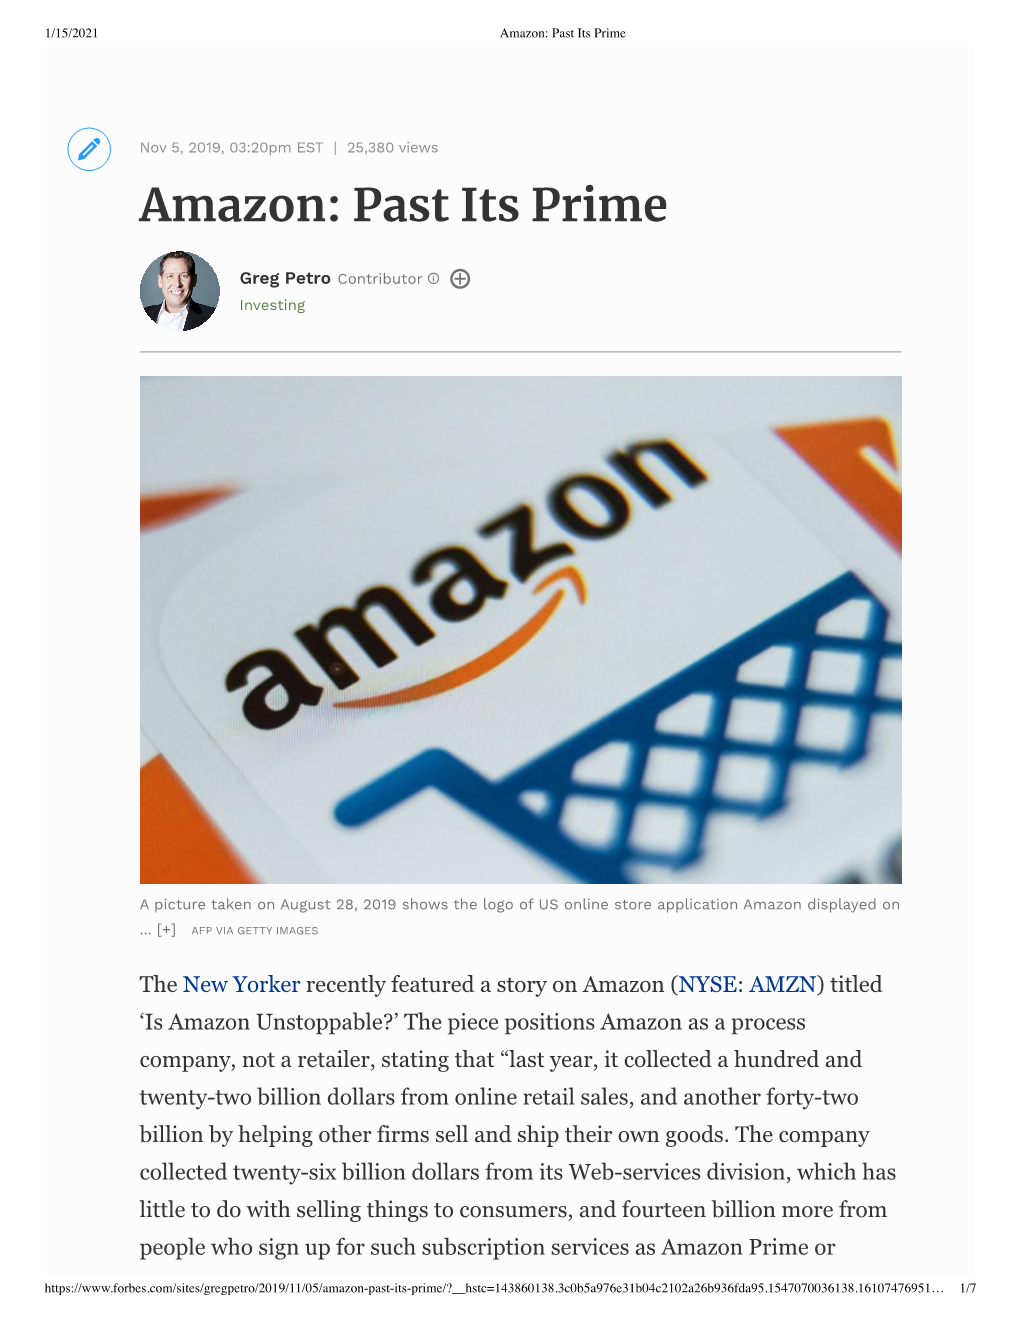 Amazon: Past Its Prime